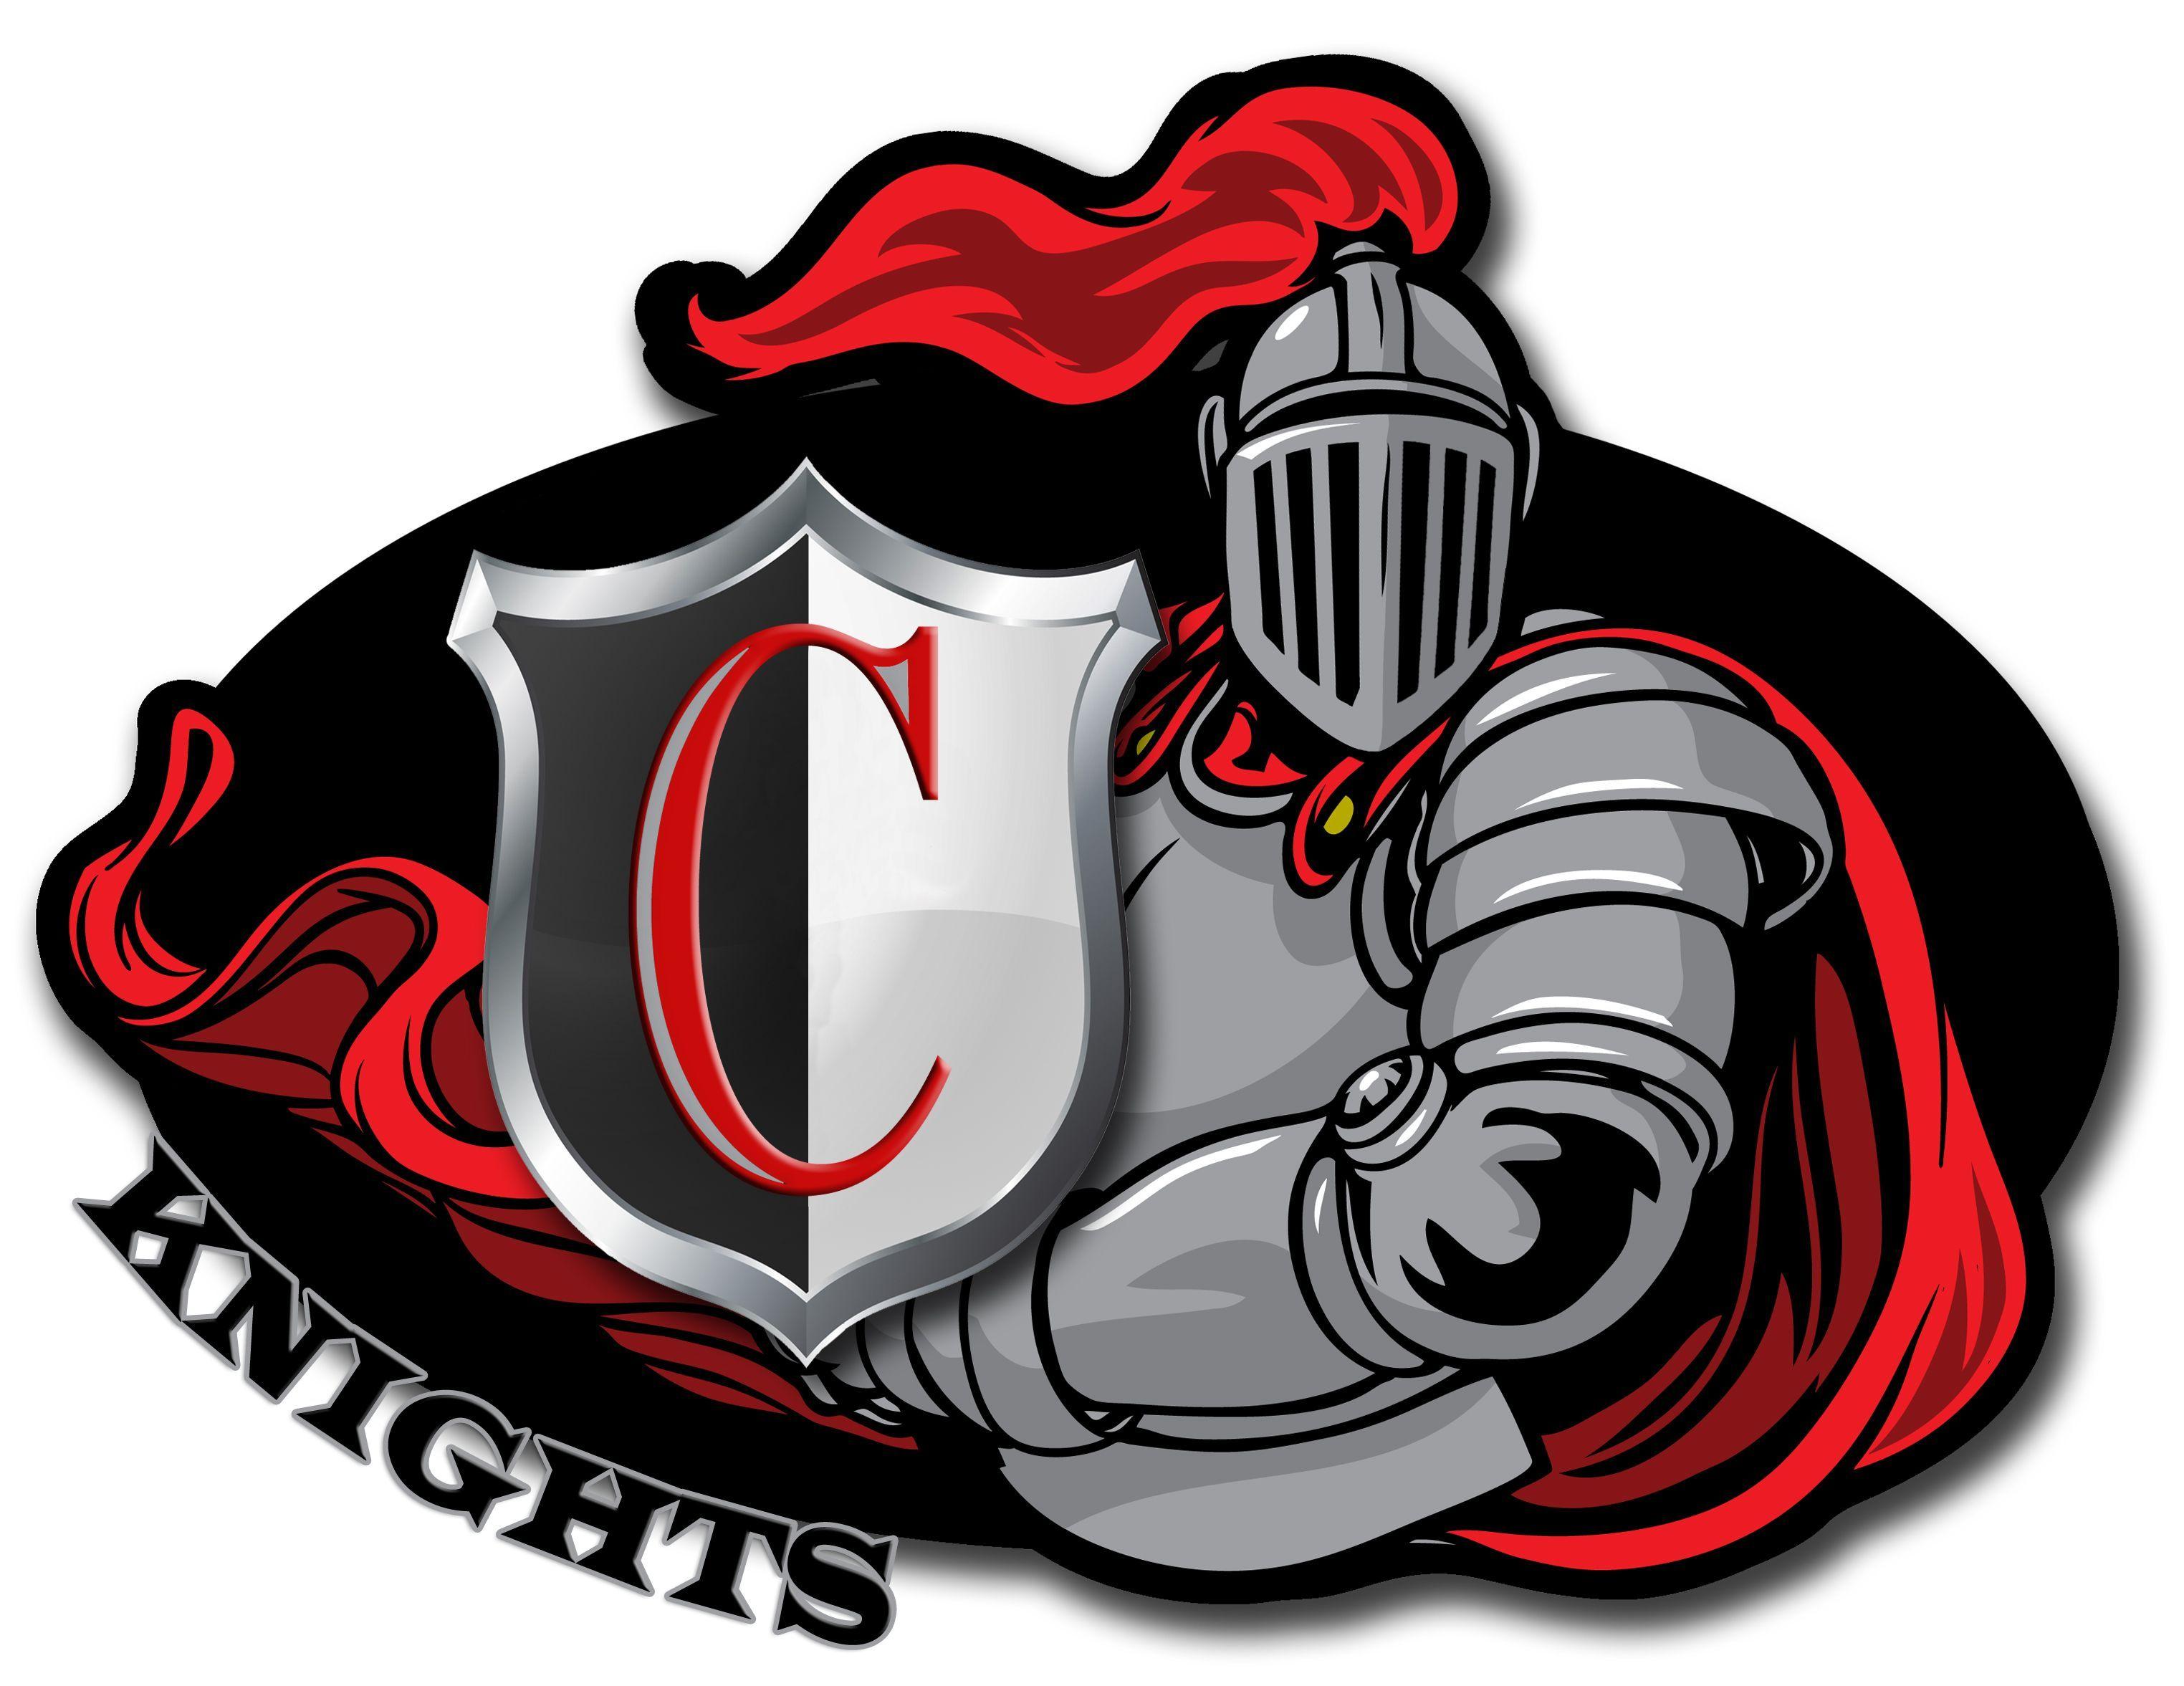 Cool Wrestling Logo - Cool High School Wrestling Logo. Copyright CHS Knight Wear. All